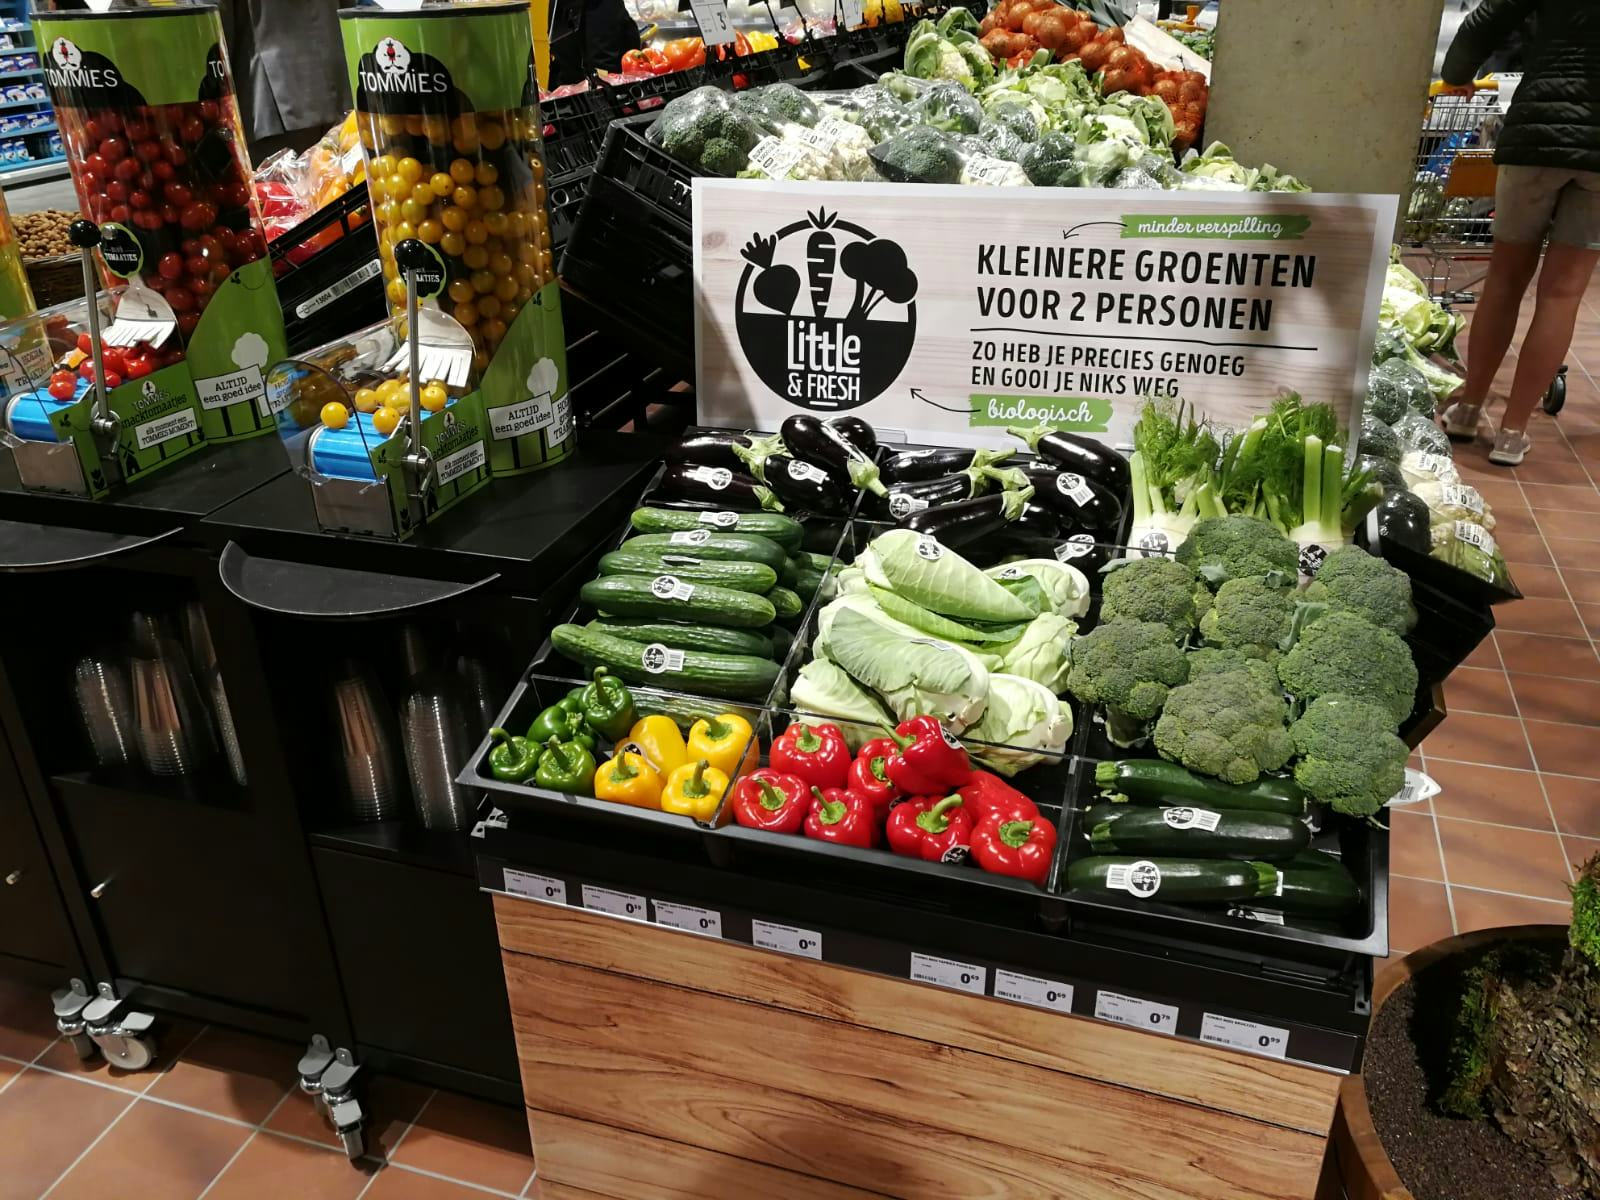 Supermarkten zien tekorten aan sommige groenten, prijzen stijgen